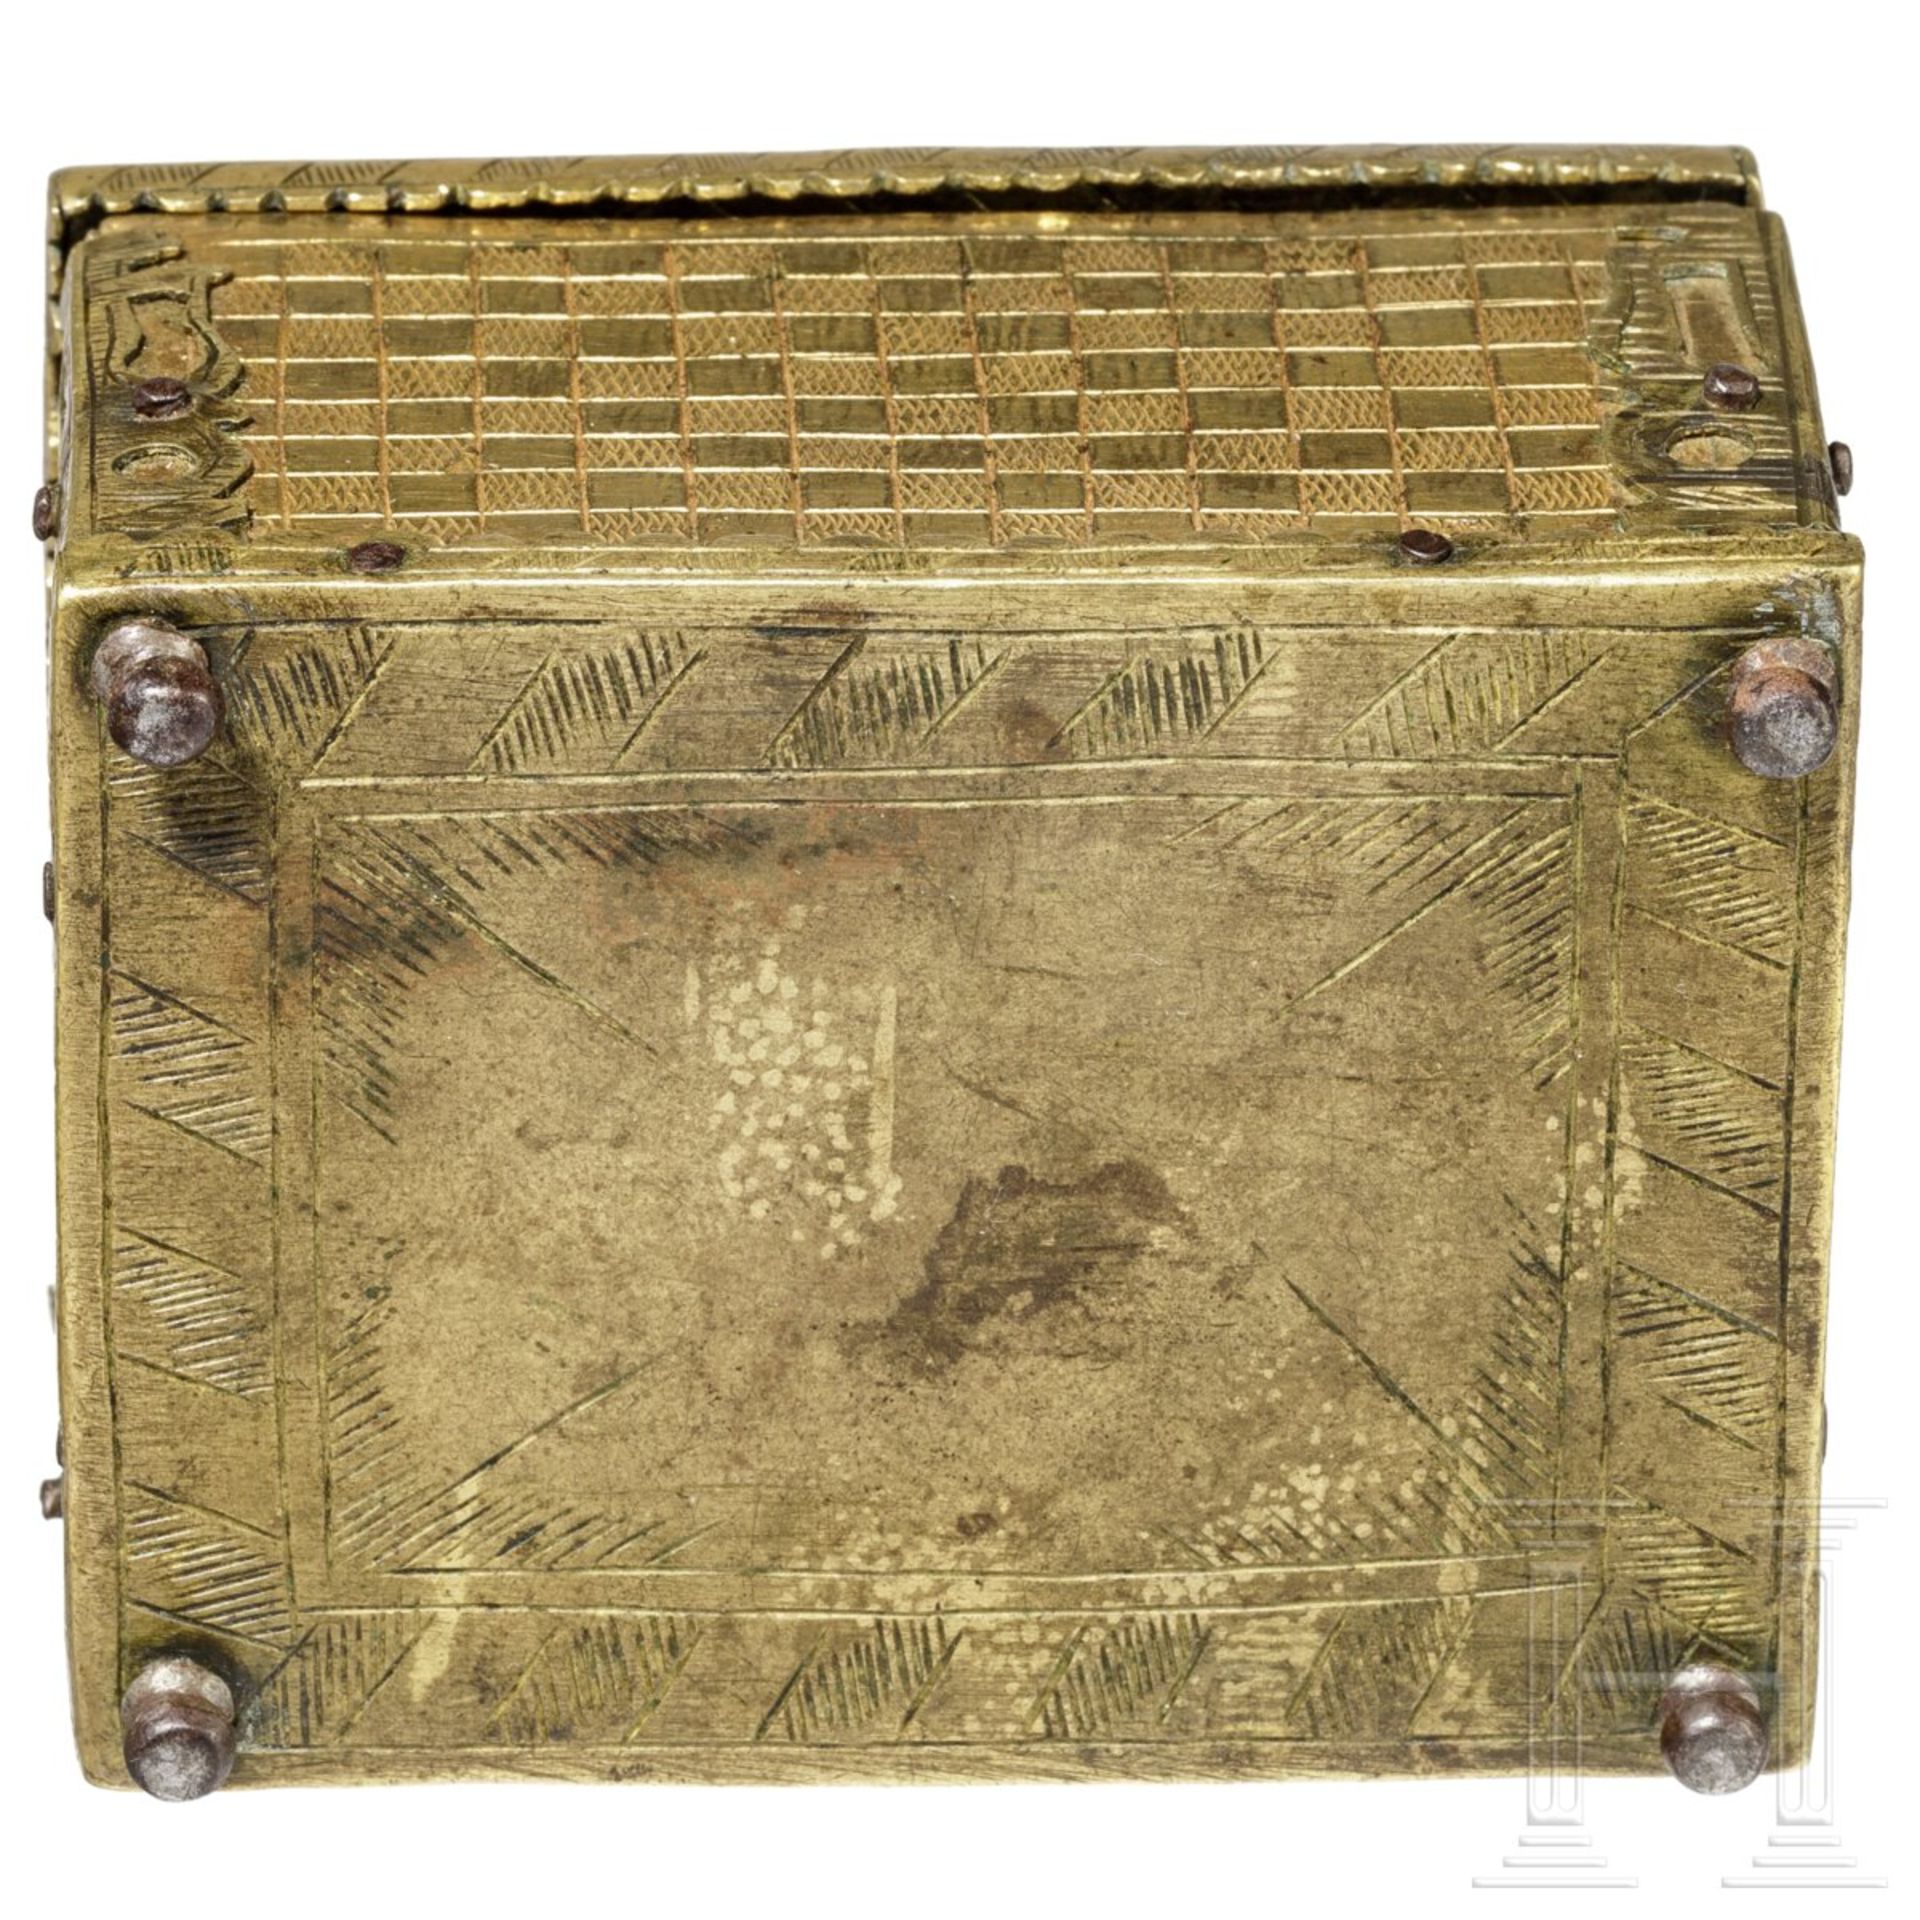 Vergoldete Miniatur-Kassette in der Art des Michel Mann, süddeutsch, um 1620 - Bild 5 aus 5